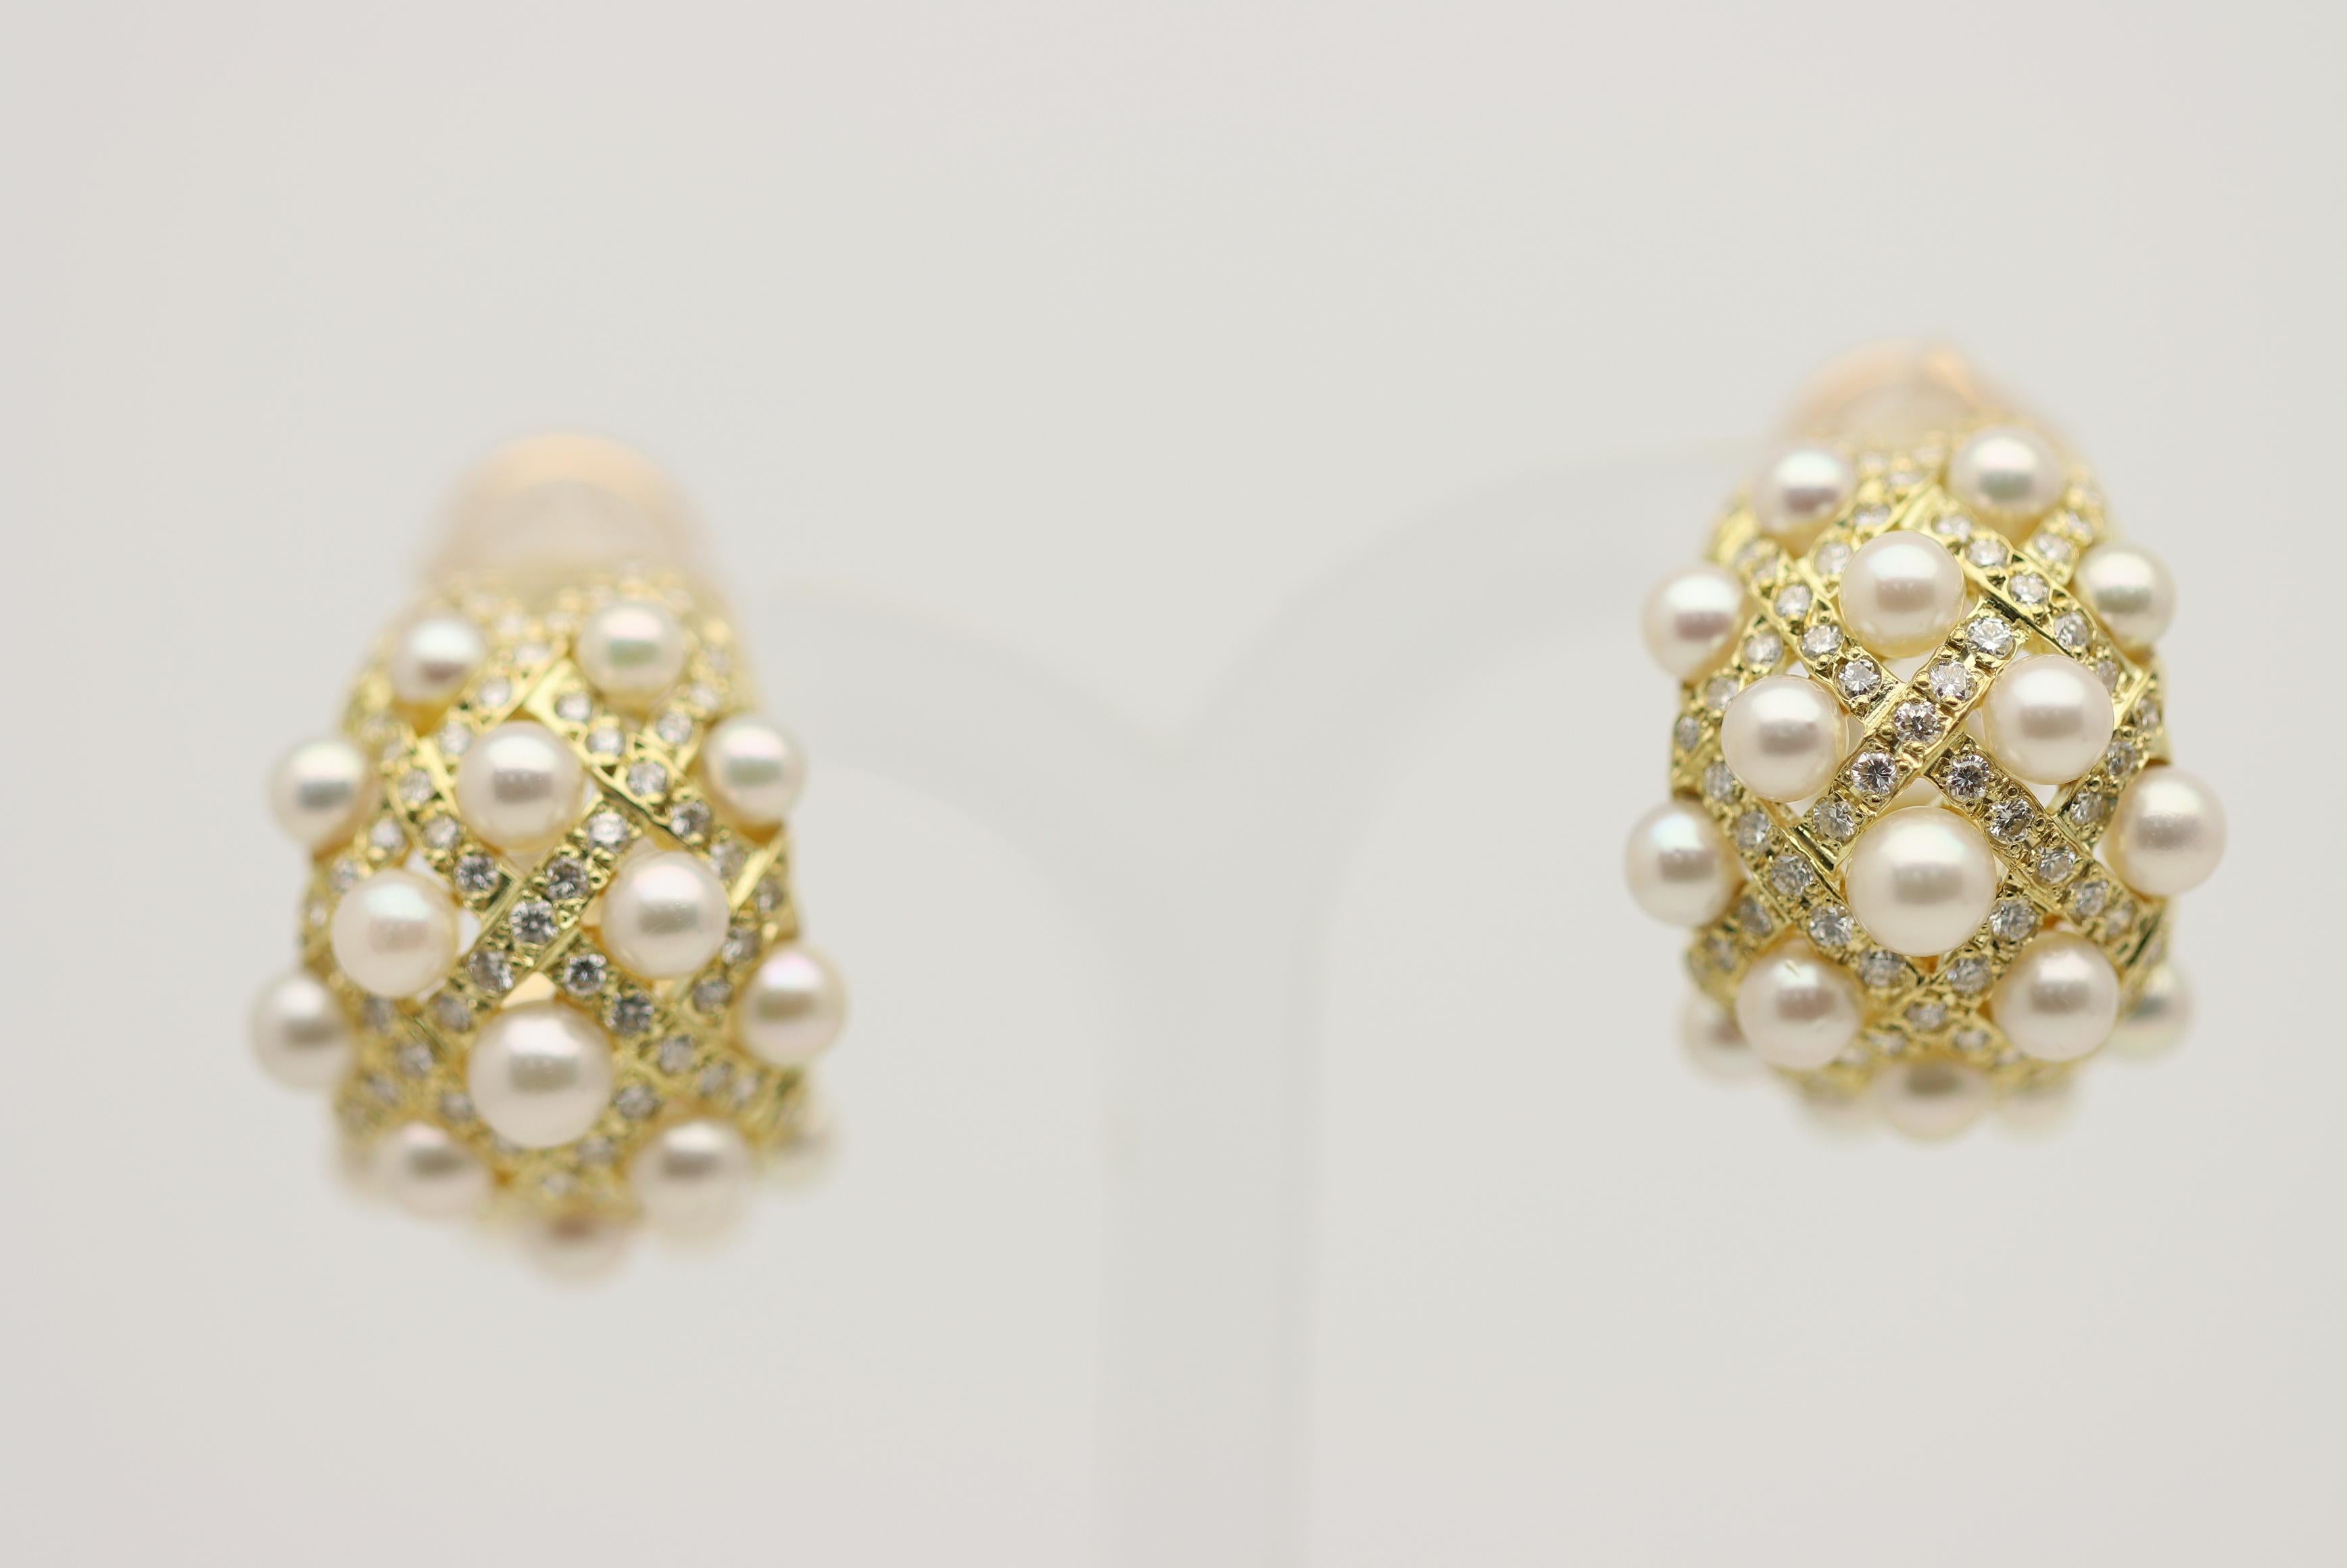 Une paire de boucles d'oreilles chic et élégante, composée d'un ensemble de fines perles de rocaille d'akoya et de diamants ronds taille brillant. Les diamants pèsent au total 1,10 carat et sont disposés en rangées intéressantes sur les boucles